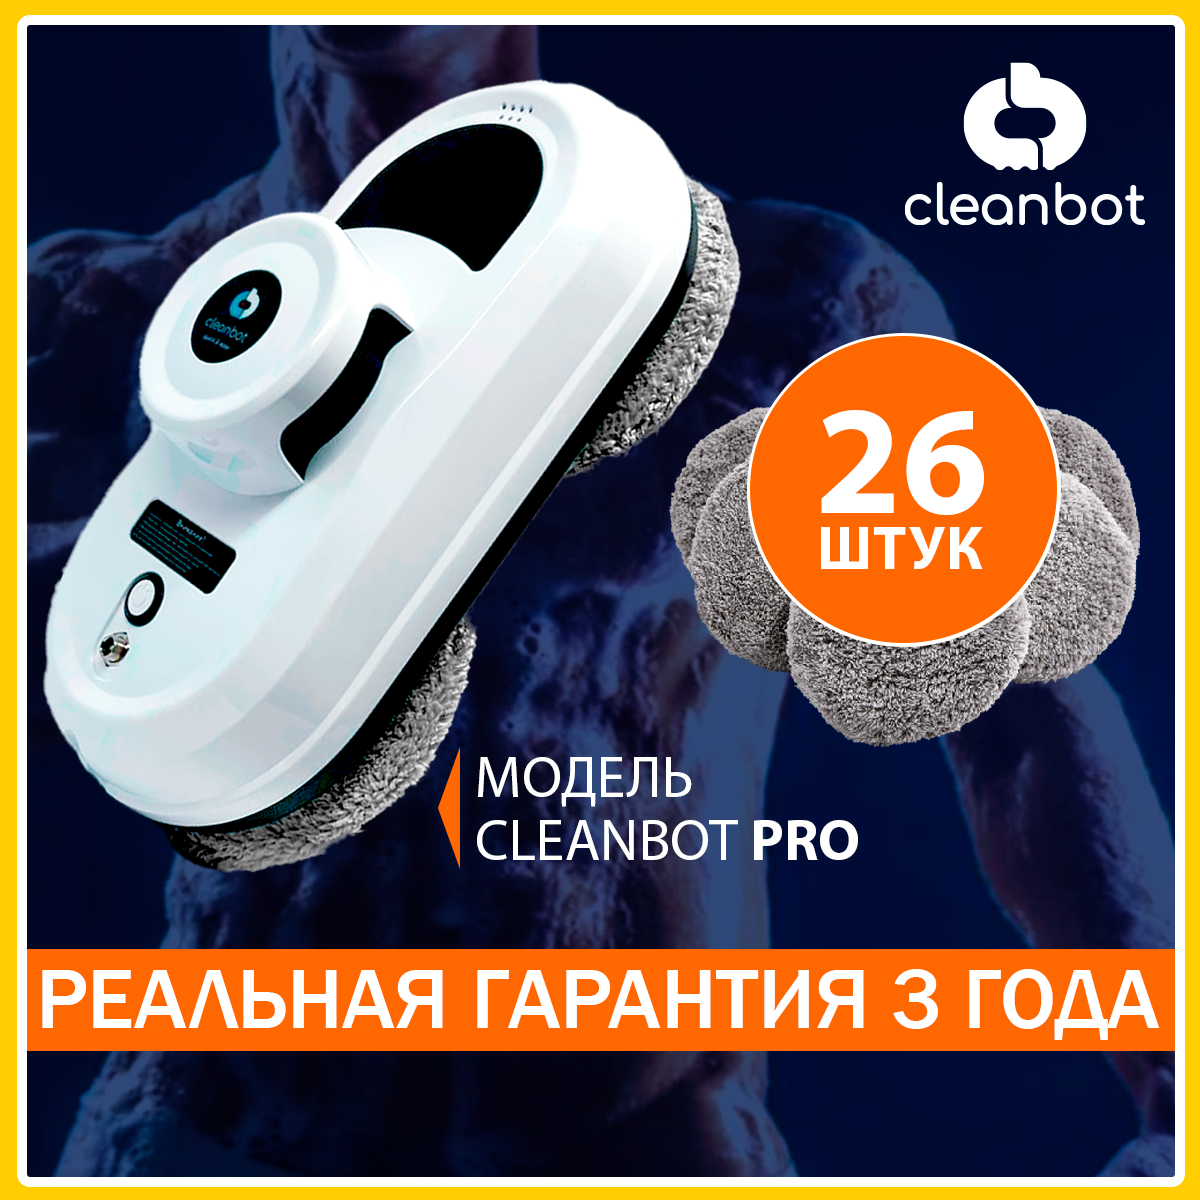 Робот-стеклоочиститель Cleanbot Pro + набор салфеток